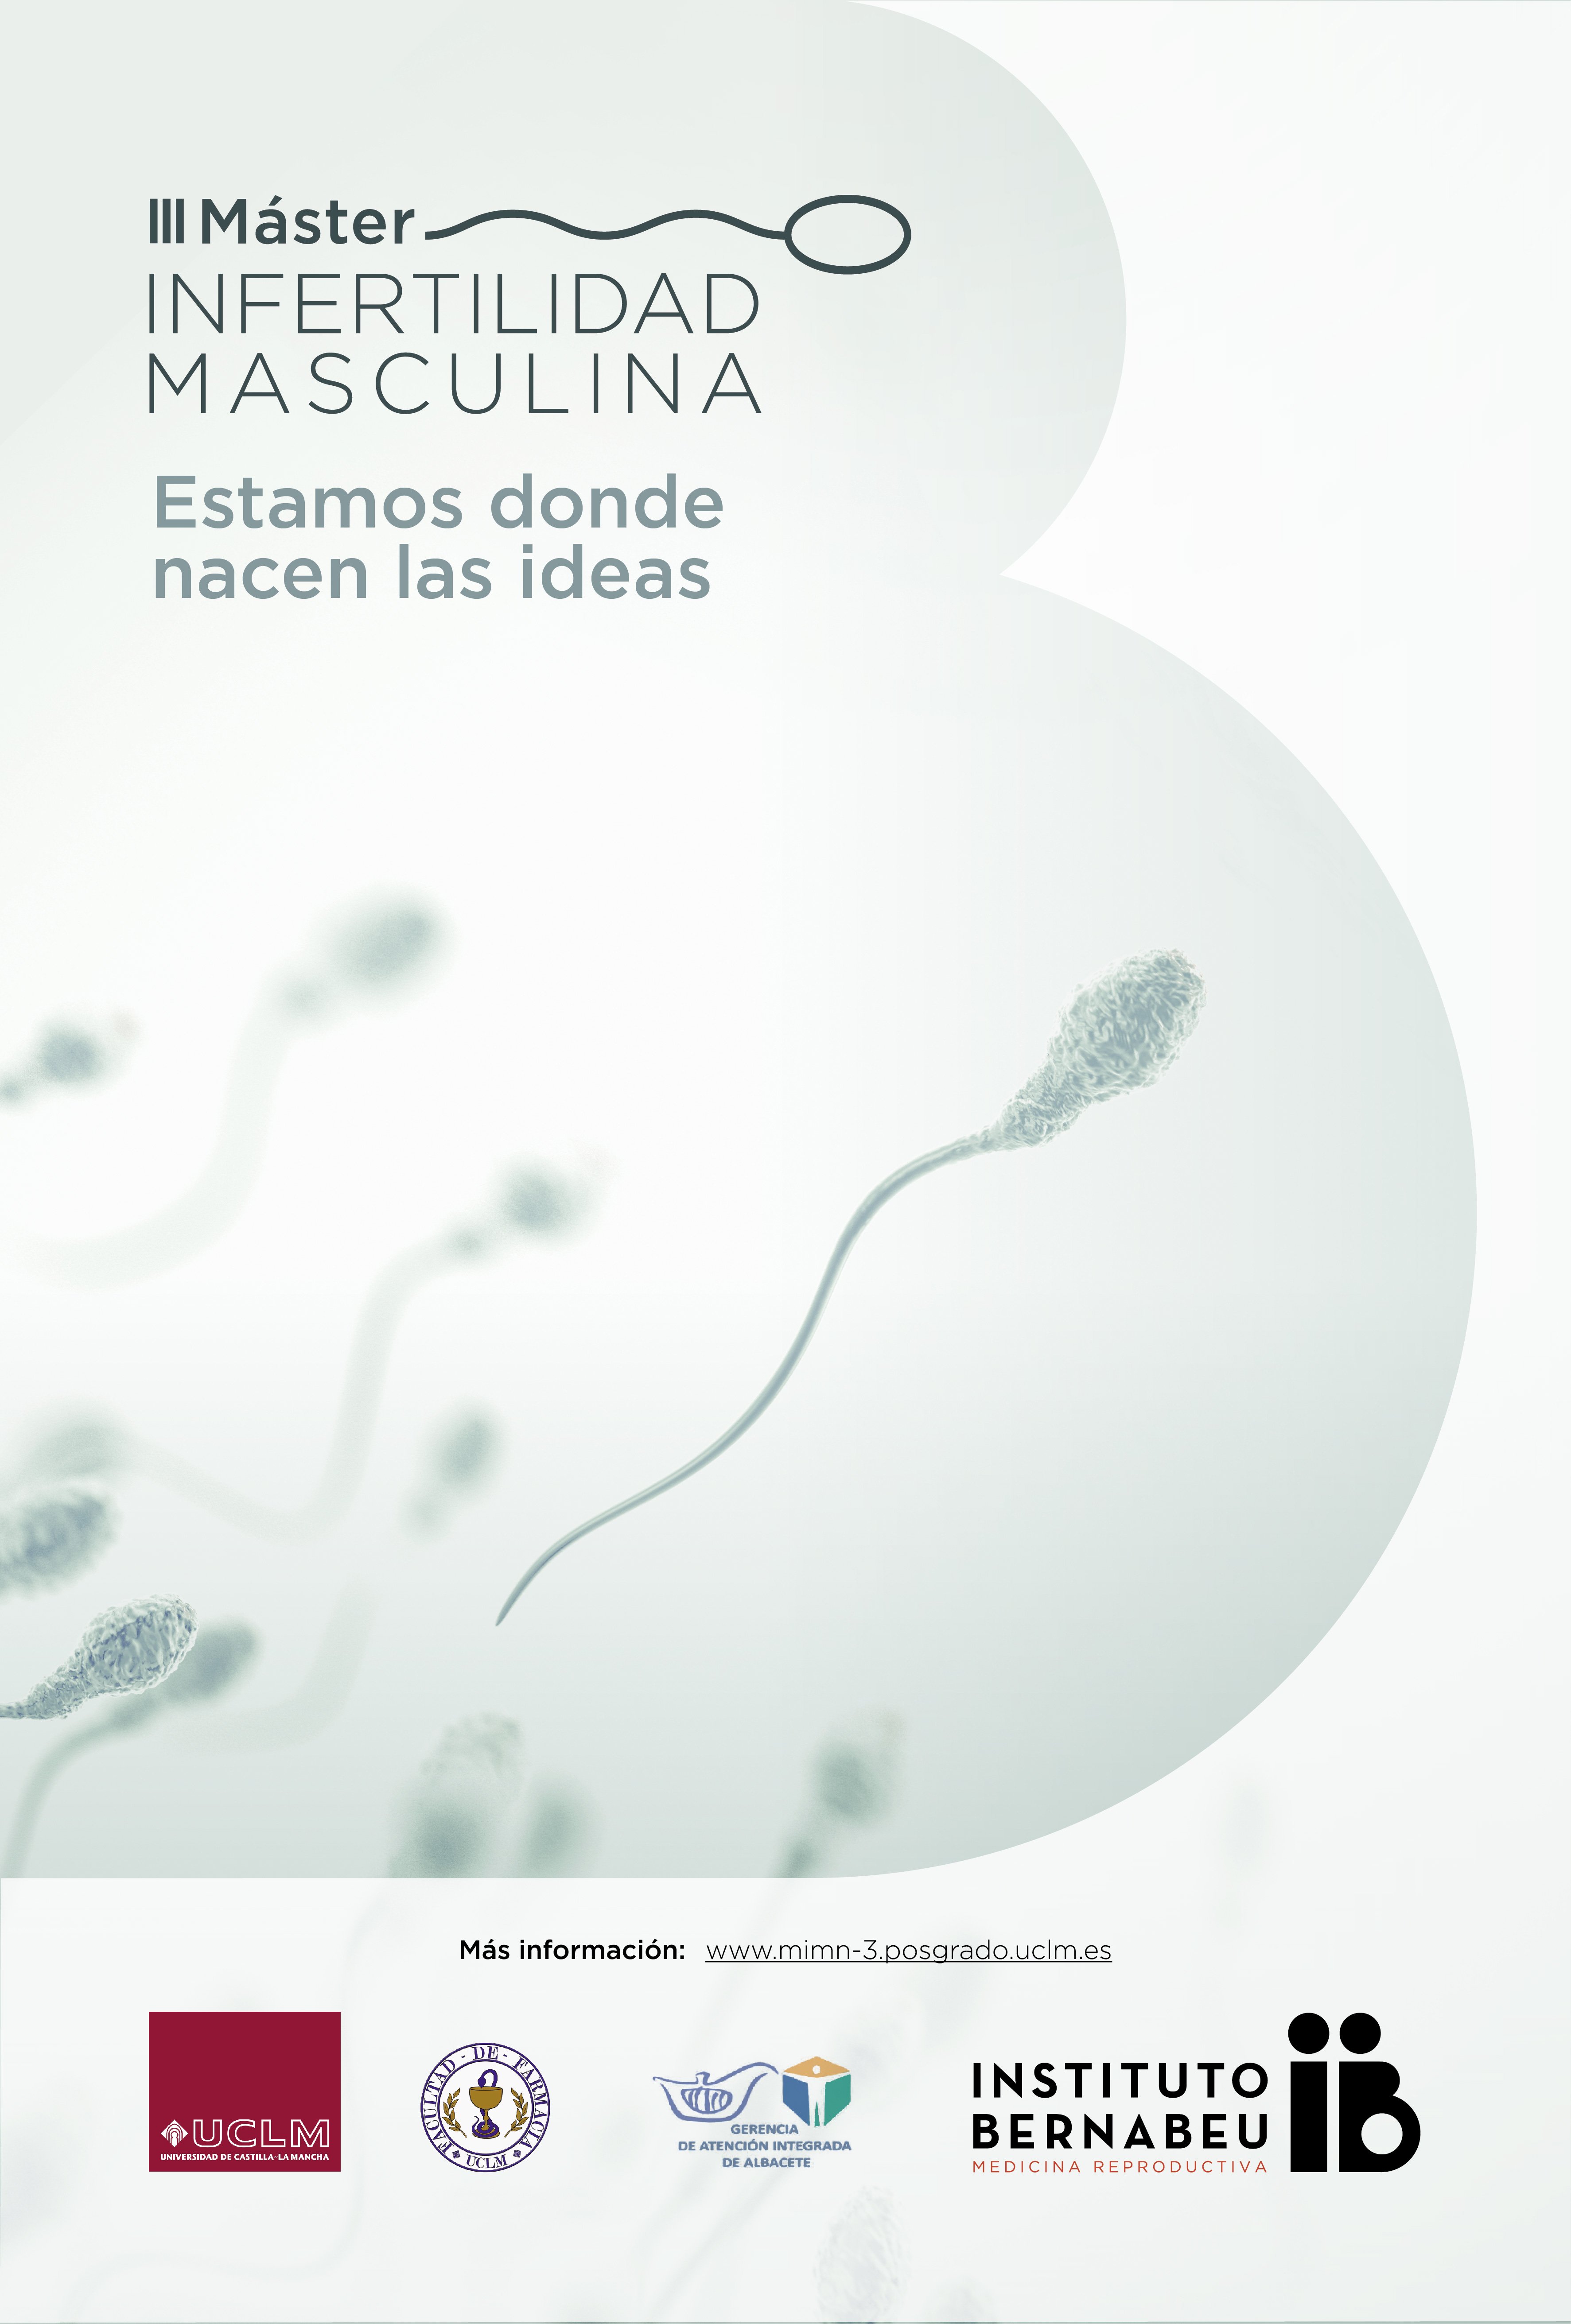 III Institute Bernabeu – Universitetet i Castilla-La Mancha I Master i mannlig infertilitet